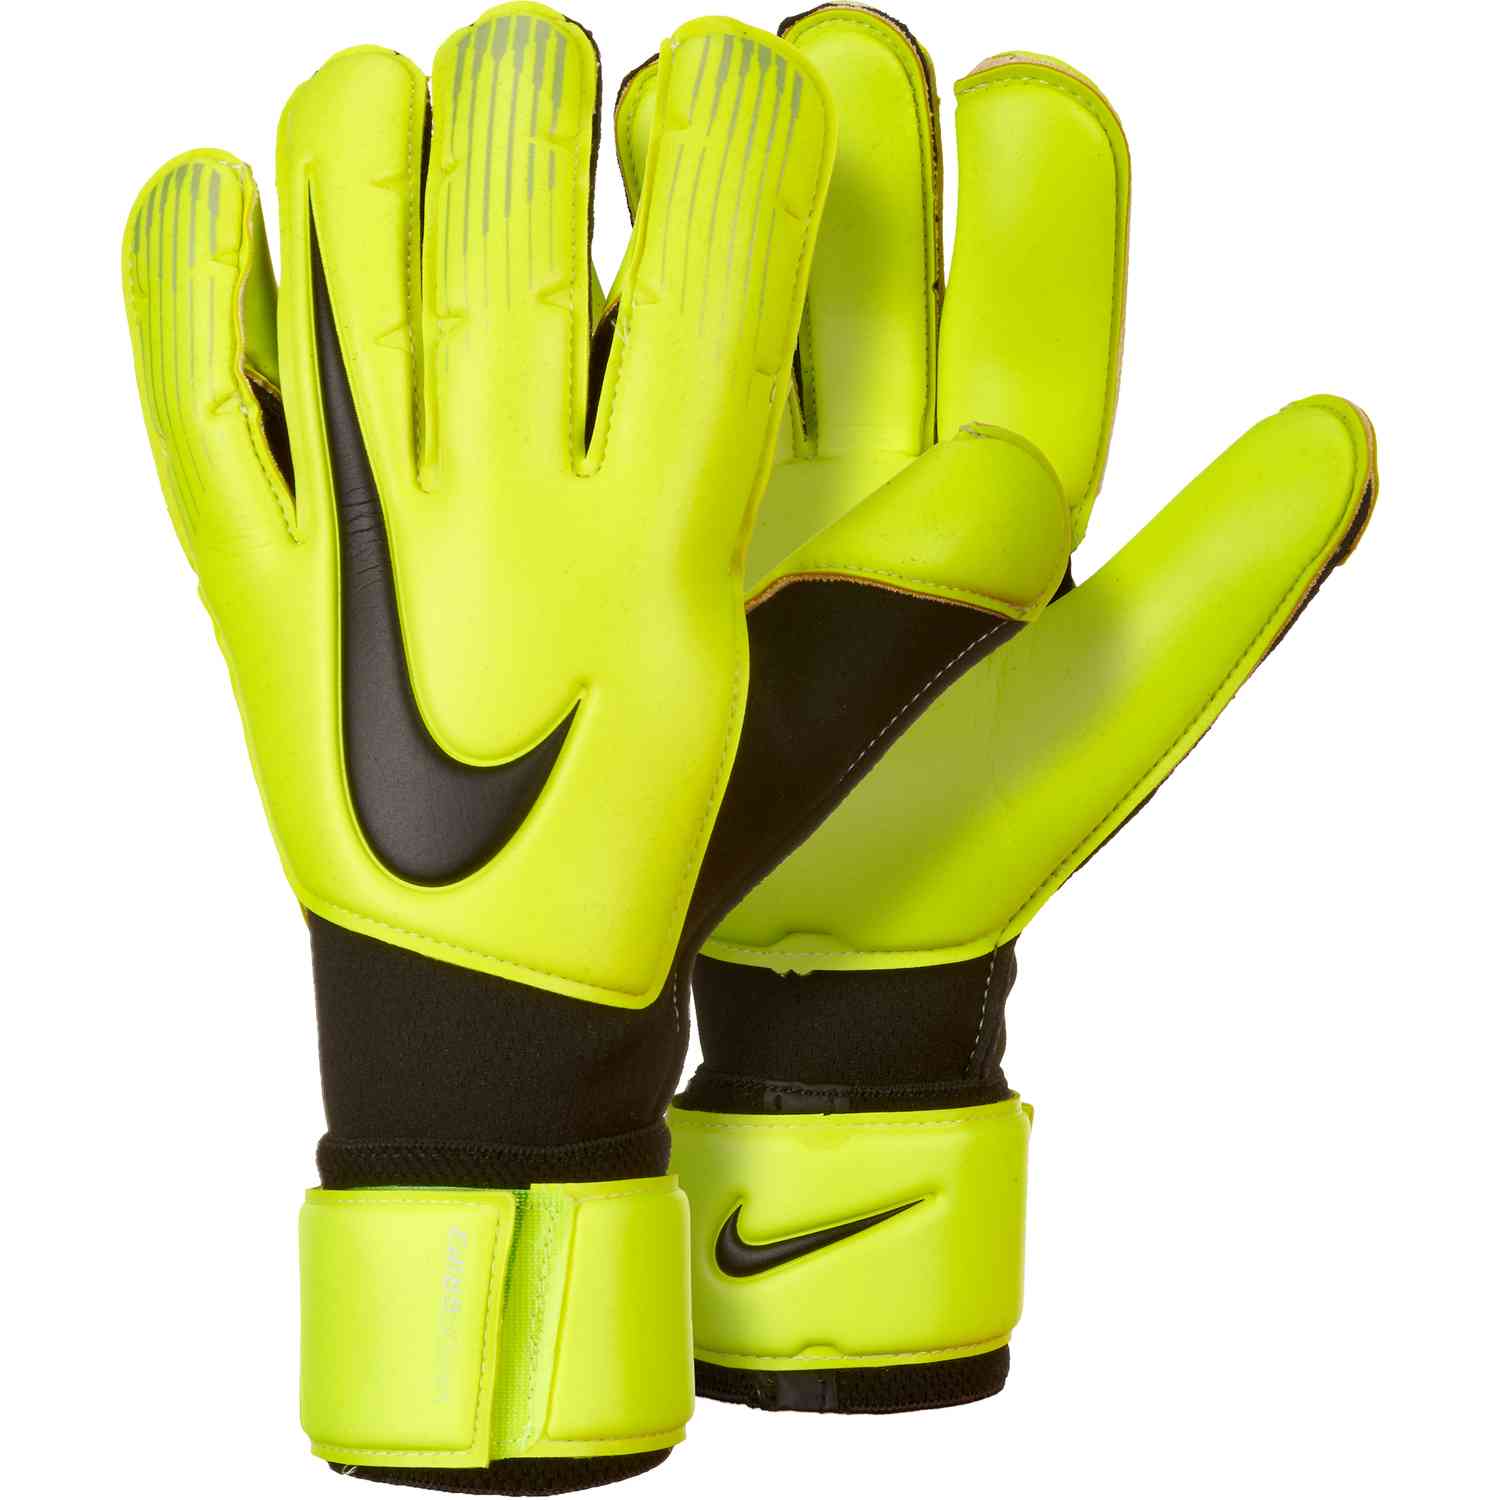 nike vapor grip 3 goalkeeper gloves black